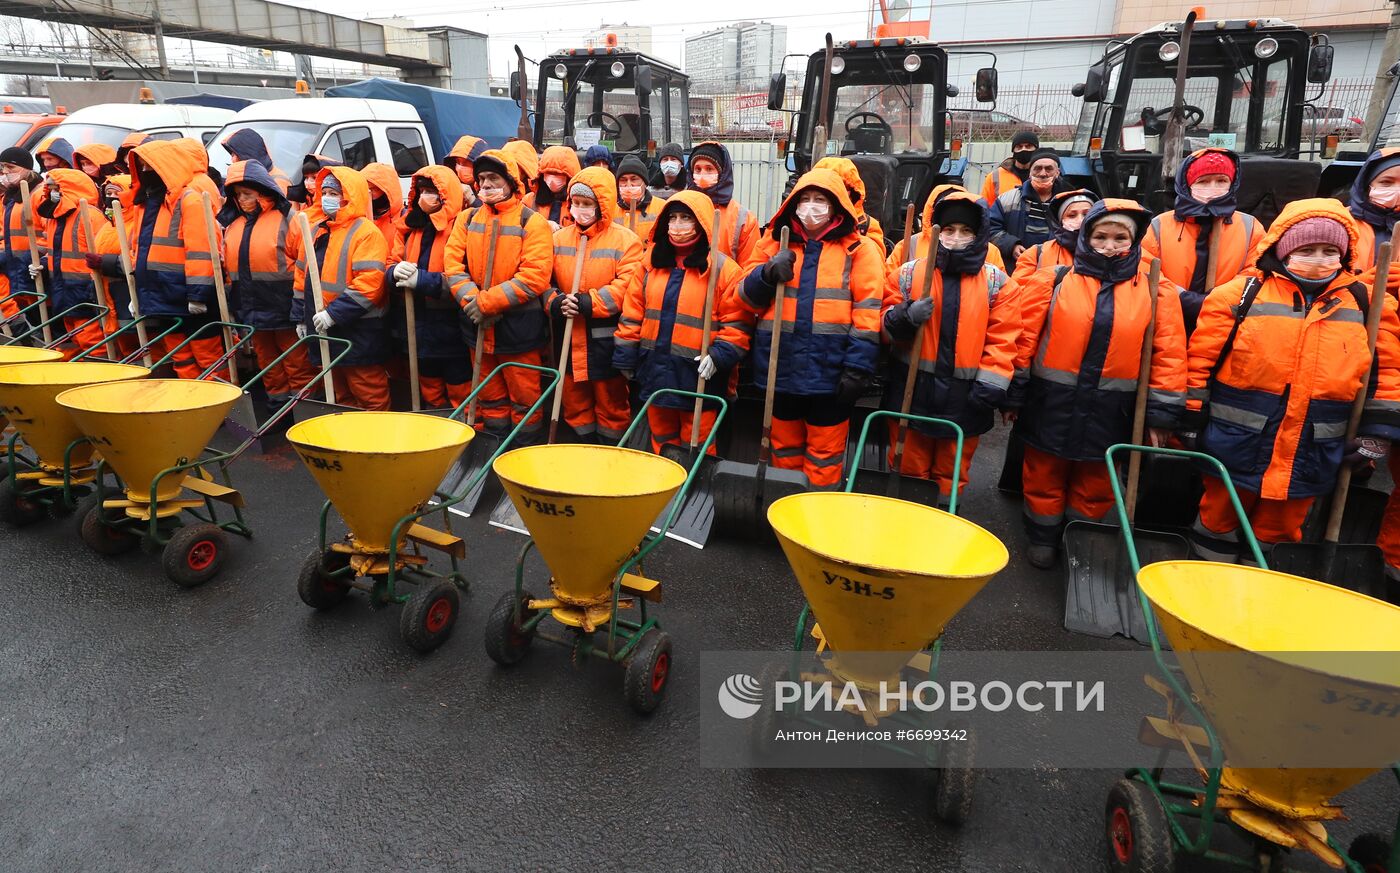 Демонстрация готовности коммунальных служб Москвы к зимнему сезону